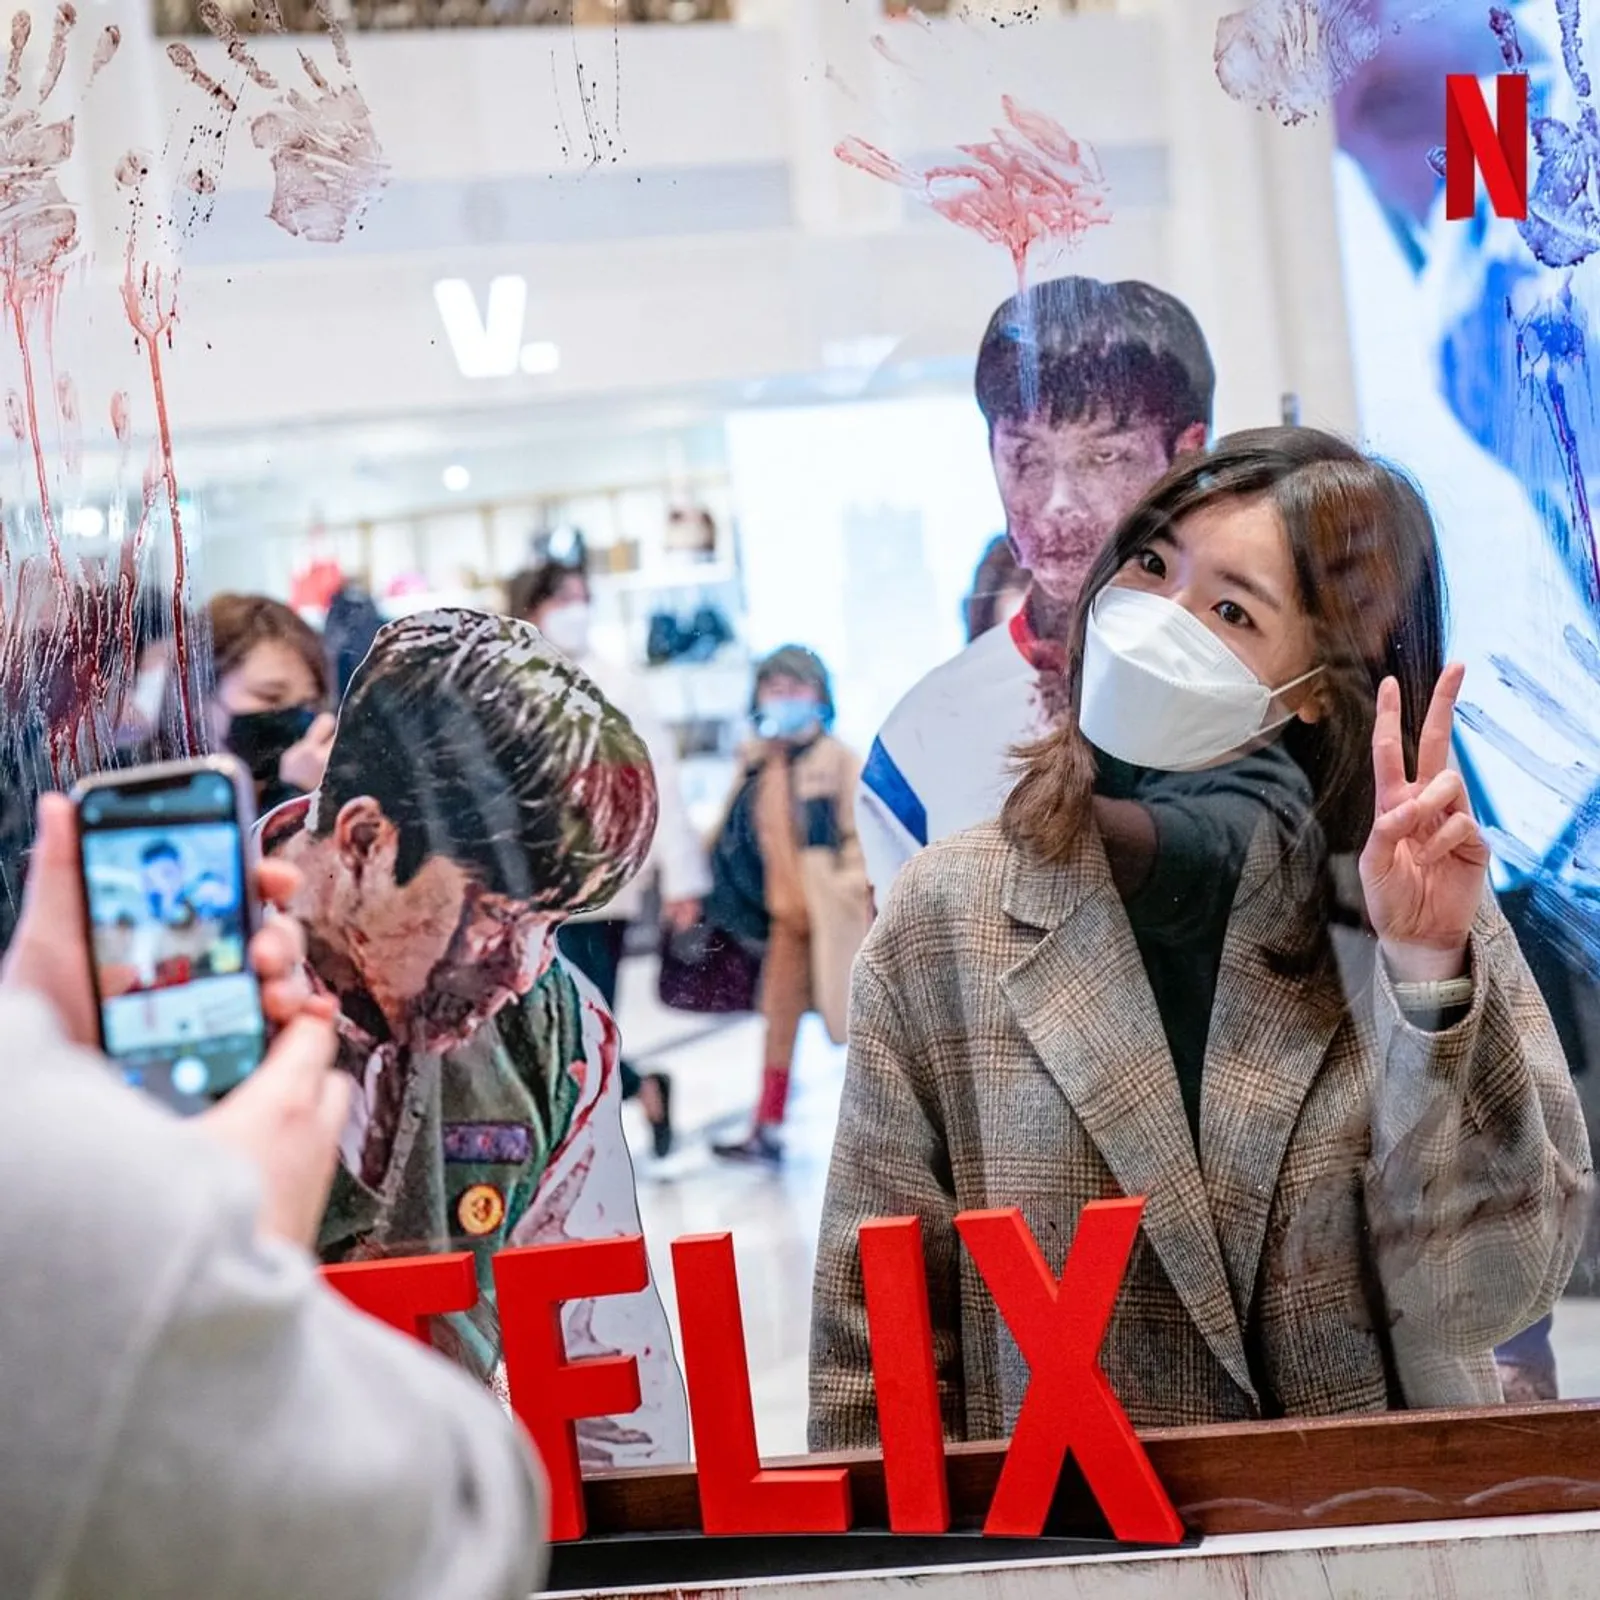 Cara Unik Netflix dalam Menarik Massa Penonton 'All of Us Are Dead'